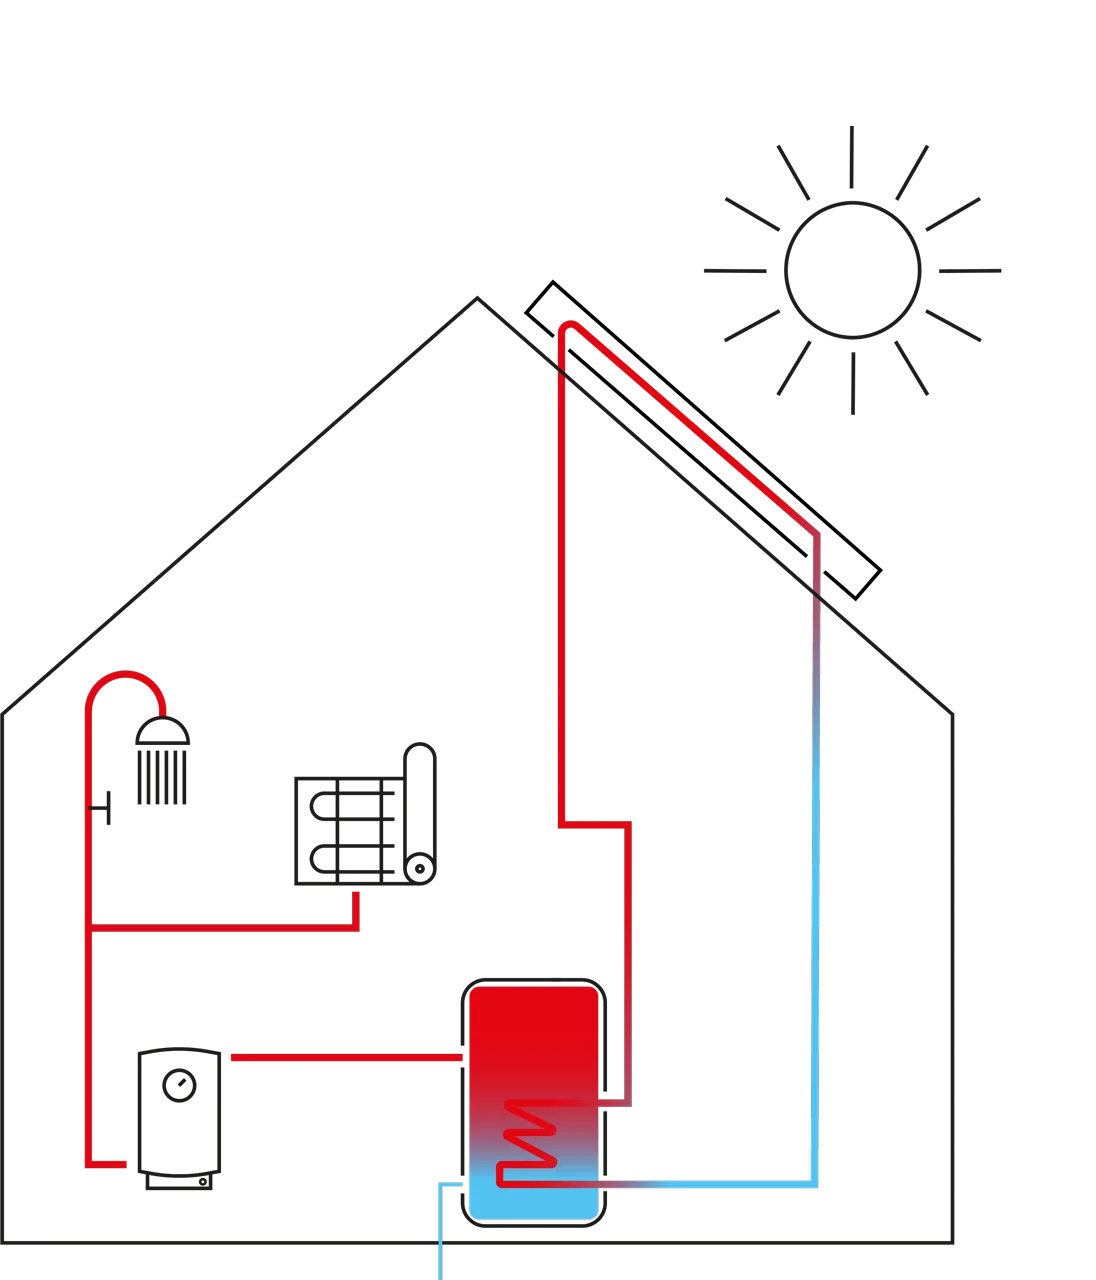 Solare termico: come funziona e guida all'acquisto